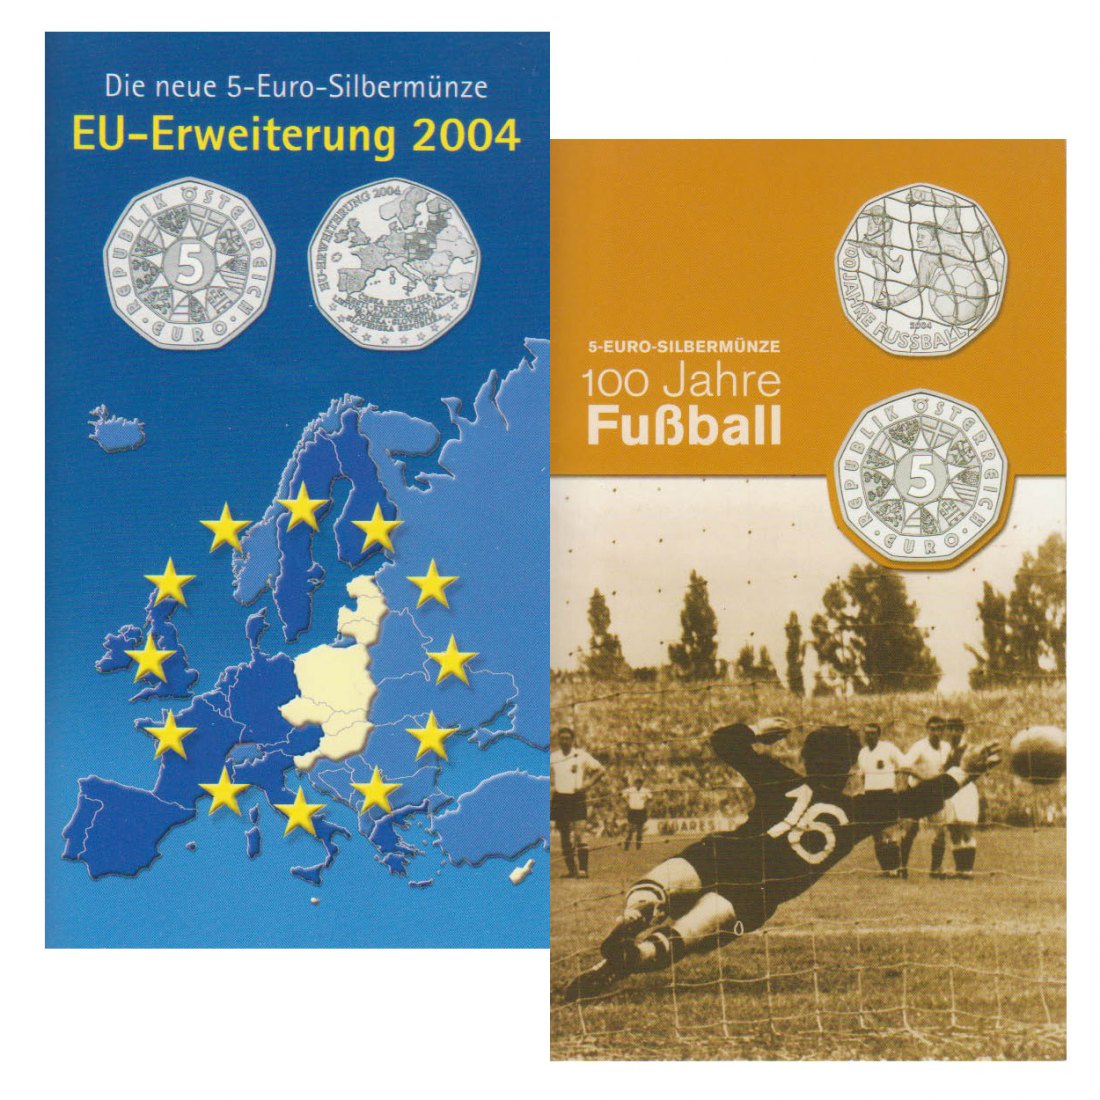  Offiz. 2x 5-Euro-Silbermünzen Österreich *100 Jahre Fußball + EU-Erweiterung* 2004 *hgh*   